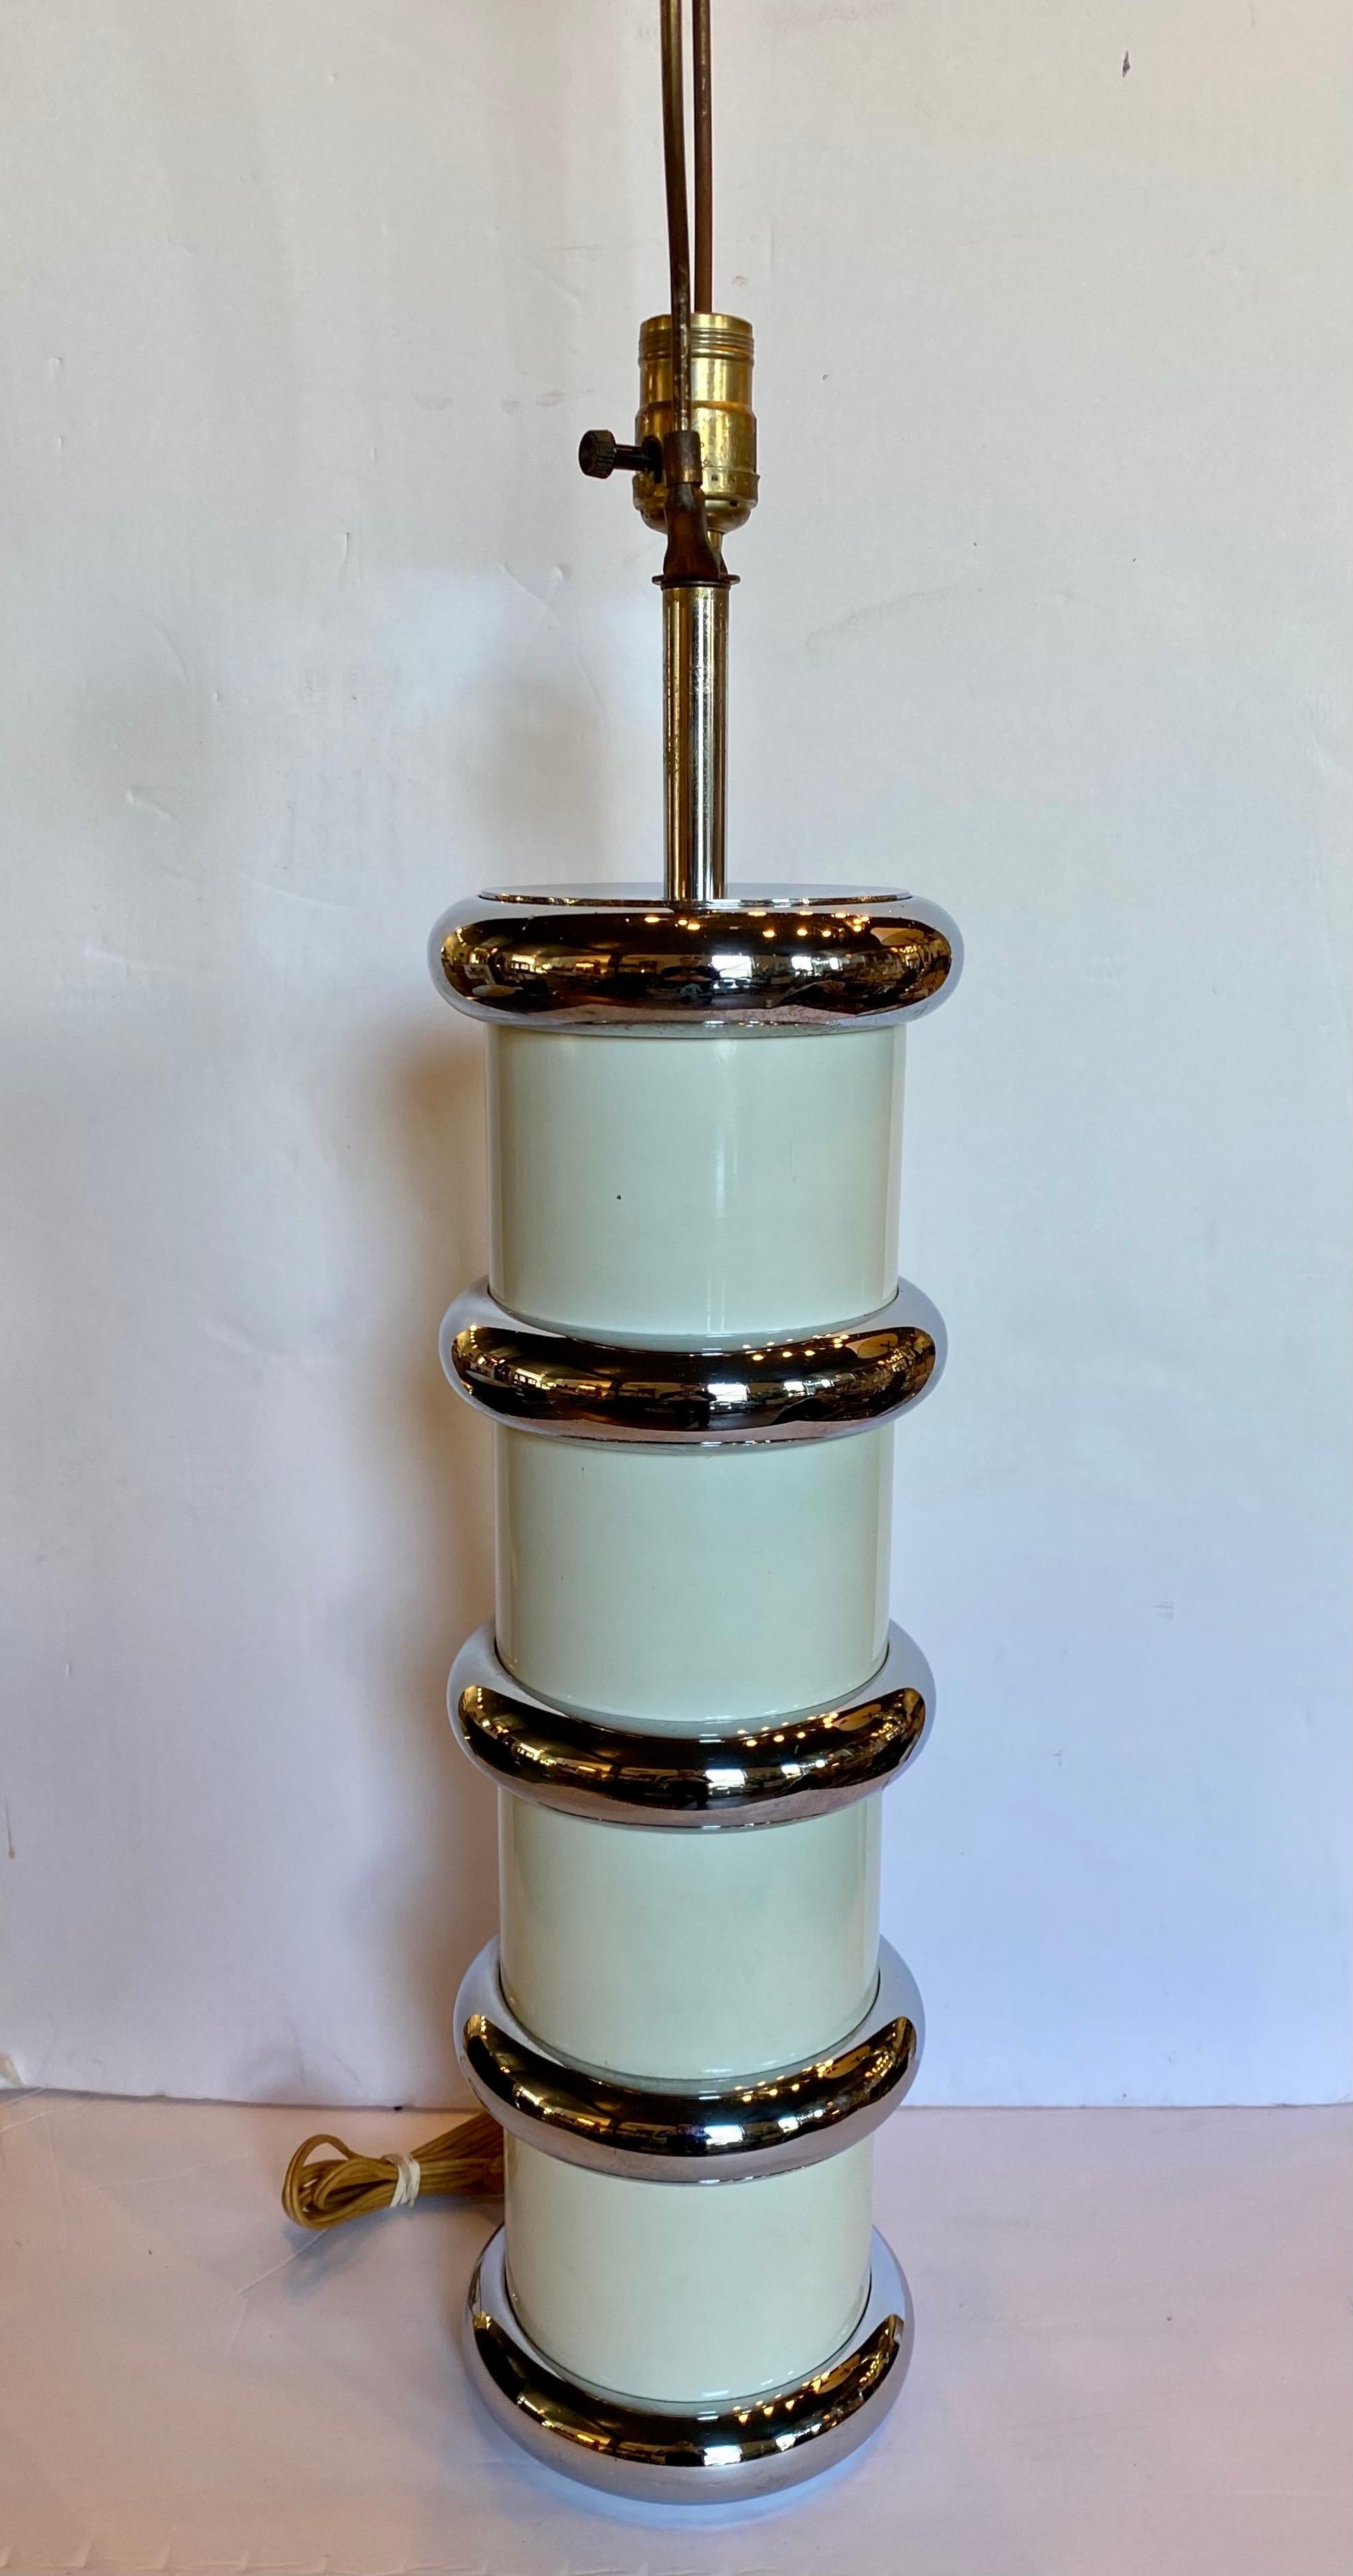 Moderne Tischlampe aus verchromtem Metall und Emaille von Mutual Sunset Lamp Company aus der Jahrhundertmitte. Diese hohe, runde, zylinderförmige Lampe verfügt über eine elfenbein- und cremefarbene Emaille-Säule, die mit verchromten Metallringen